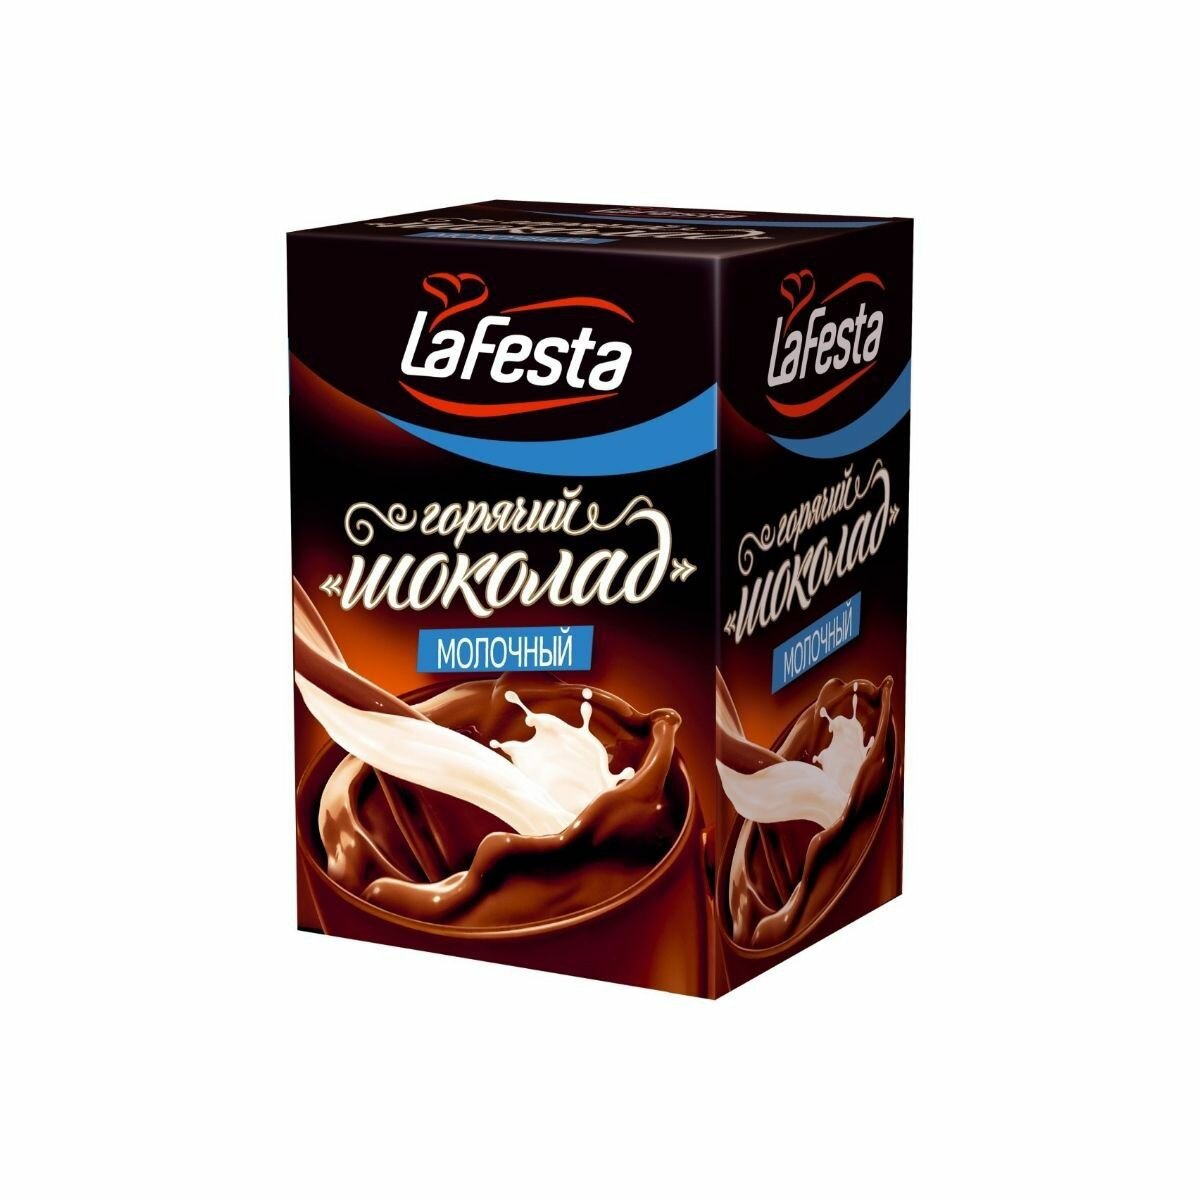 LaFesta Горячий шоколад 22г. - 10шт. Молочный